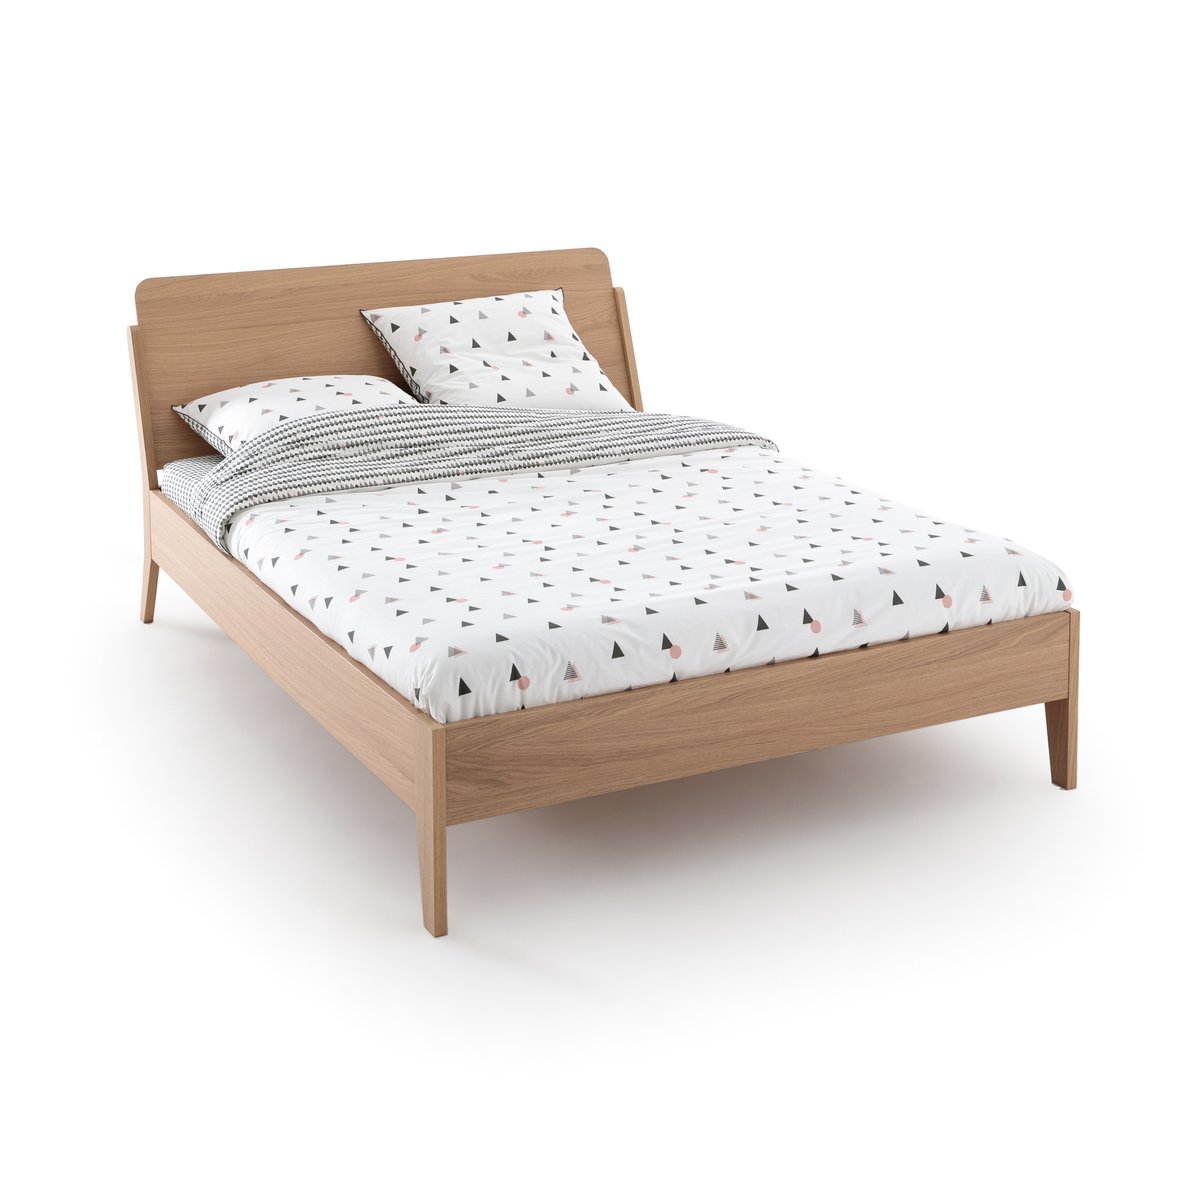 Кровать LaRedoute Кровать DOUV 140 x 190 см каштановый кровати 140 см